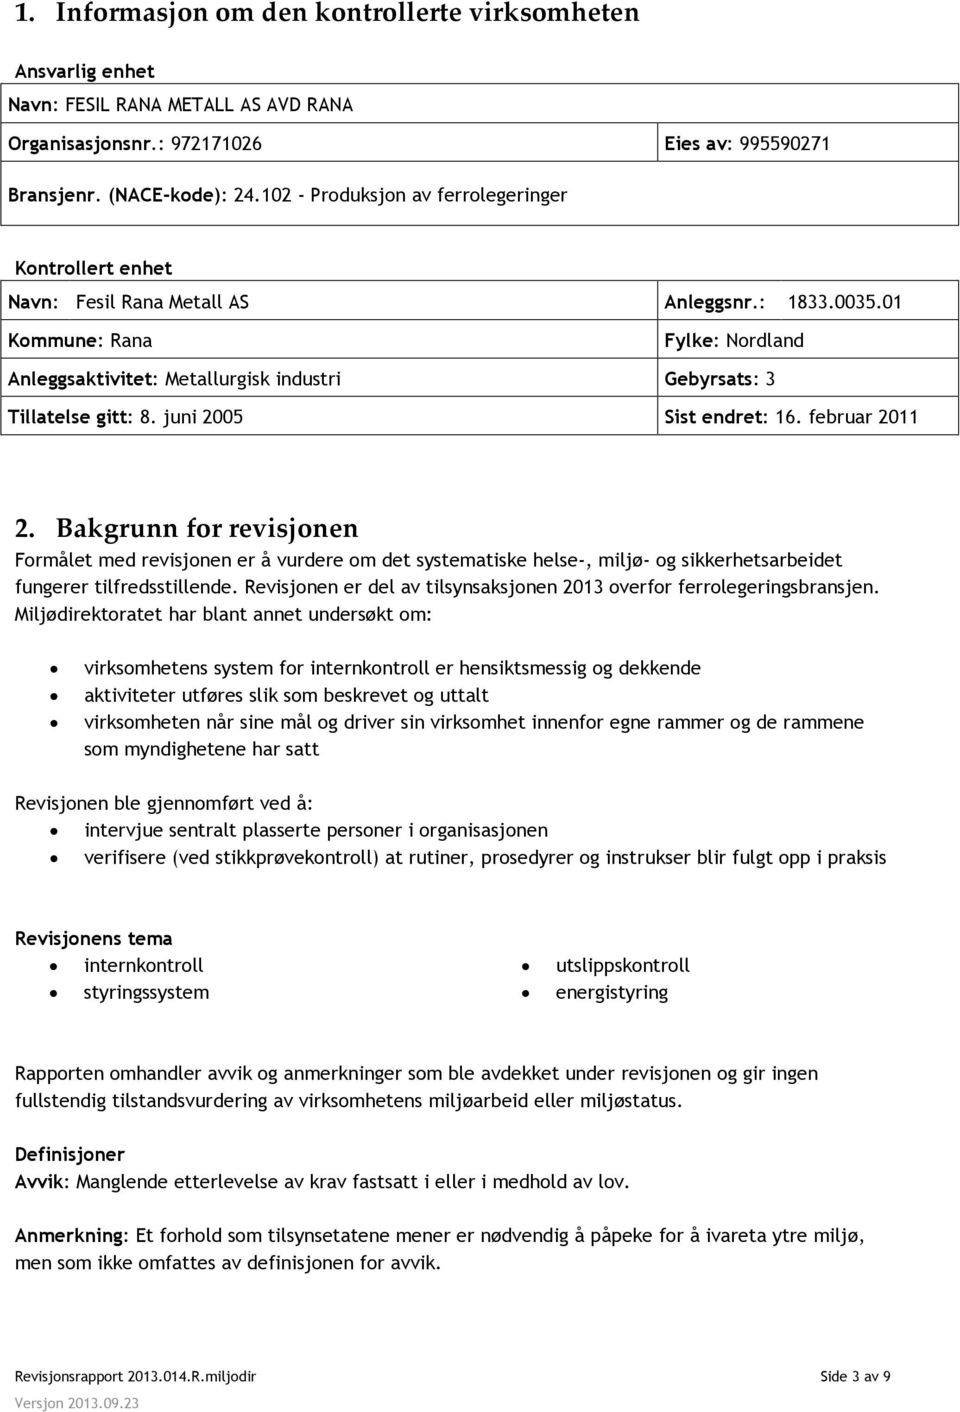 01 Kommune: Rana Fylke: Nordland Anleggsaktivitet: Metallurgisk industri Gebyrsats: 3 Tillatelse gitt: 8. juni 2005 Sist endret: 16. februar 2011 2.